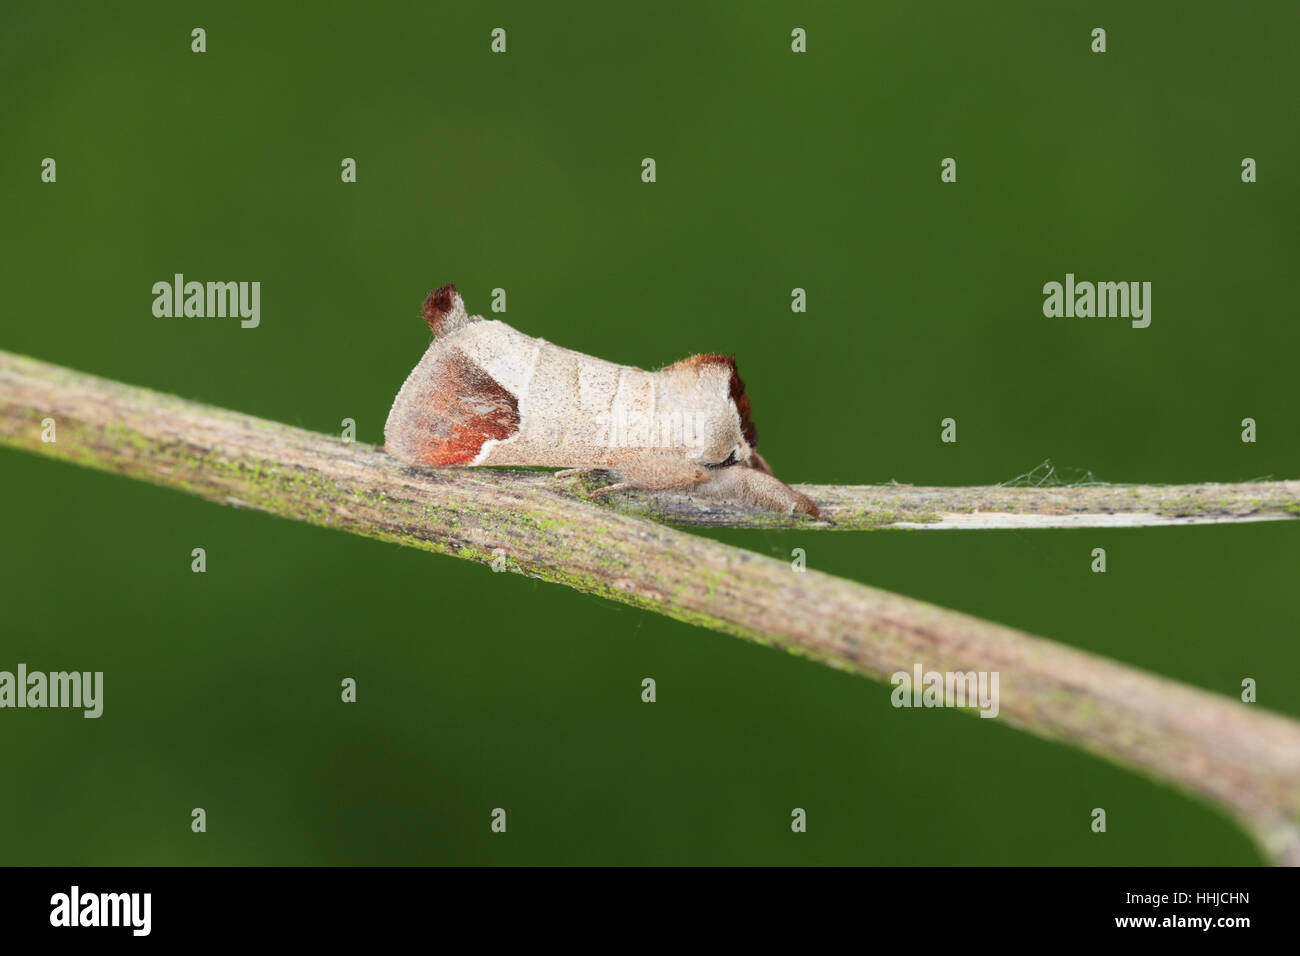 Schokolade-Tip (Clostera Curtula) - eine Motte mit einem hervorstehenden braunen Schweif - thront auf einem Zweig, einem sauberen grünen Hintergrund Stockfoto